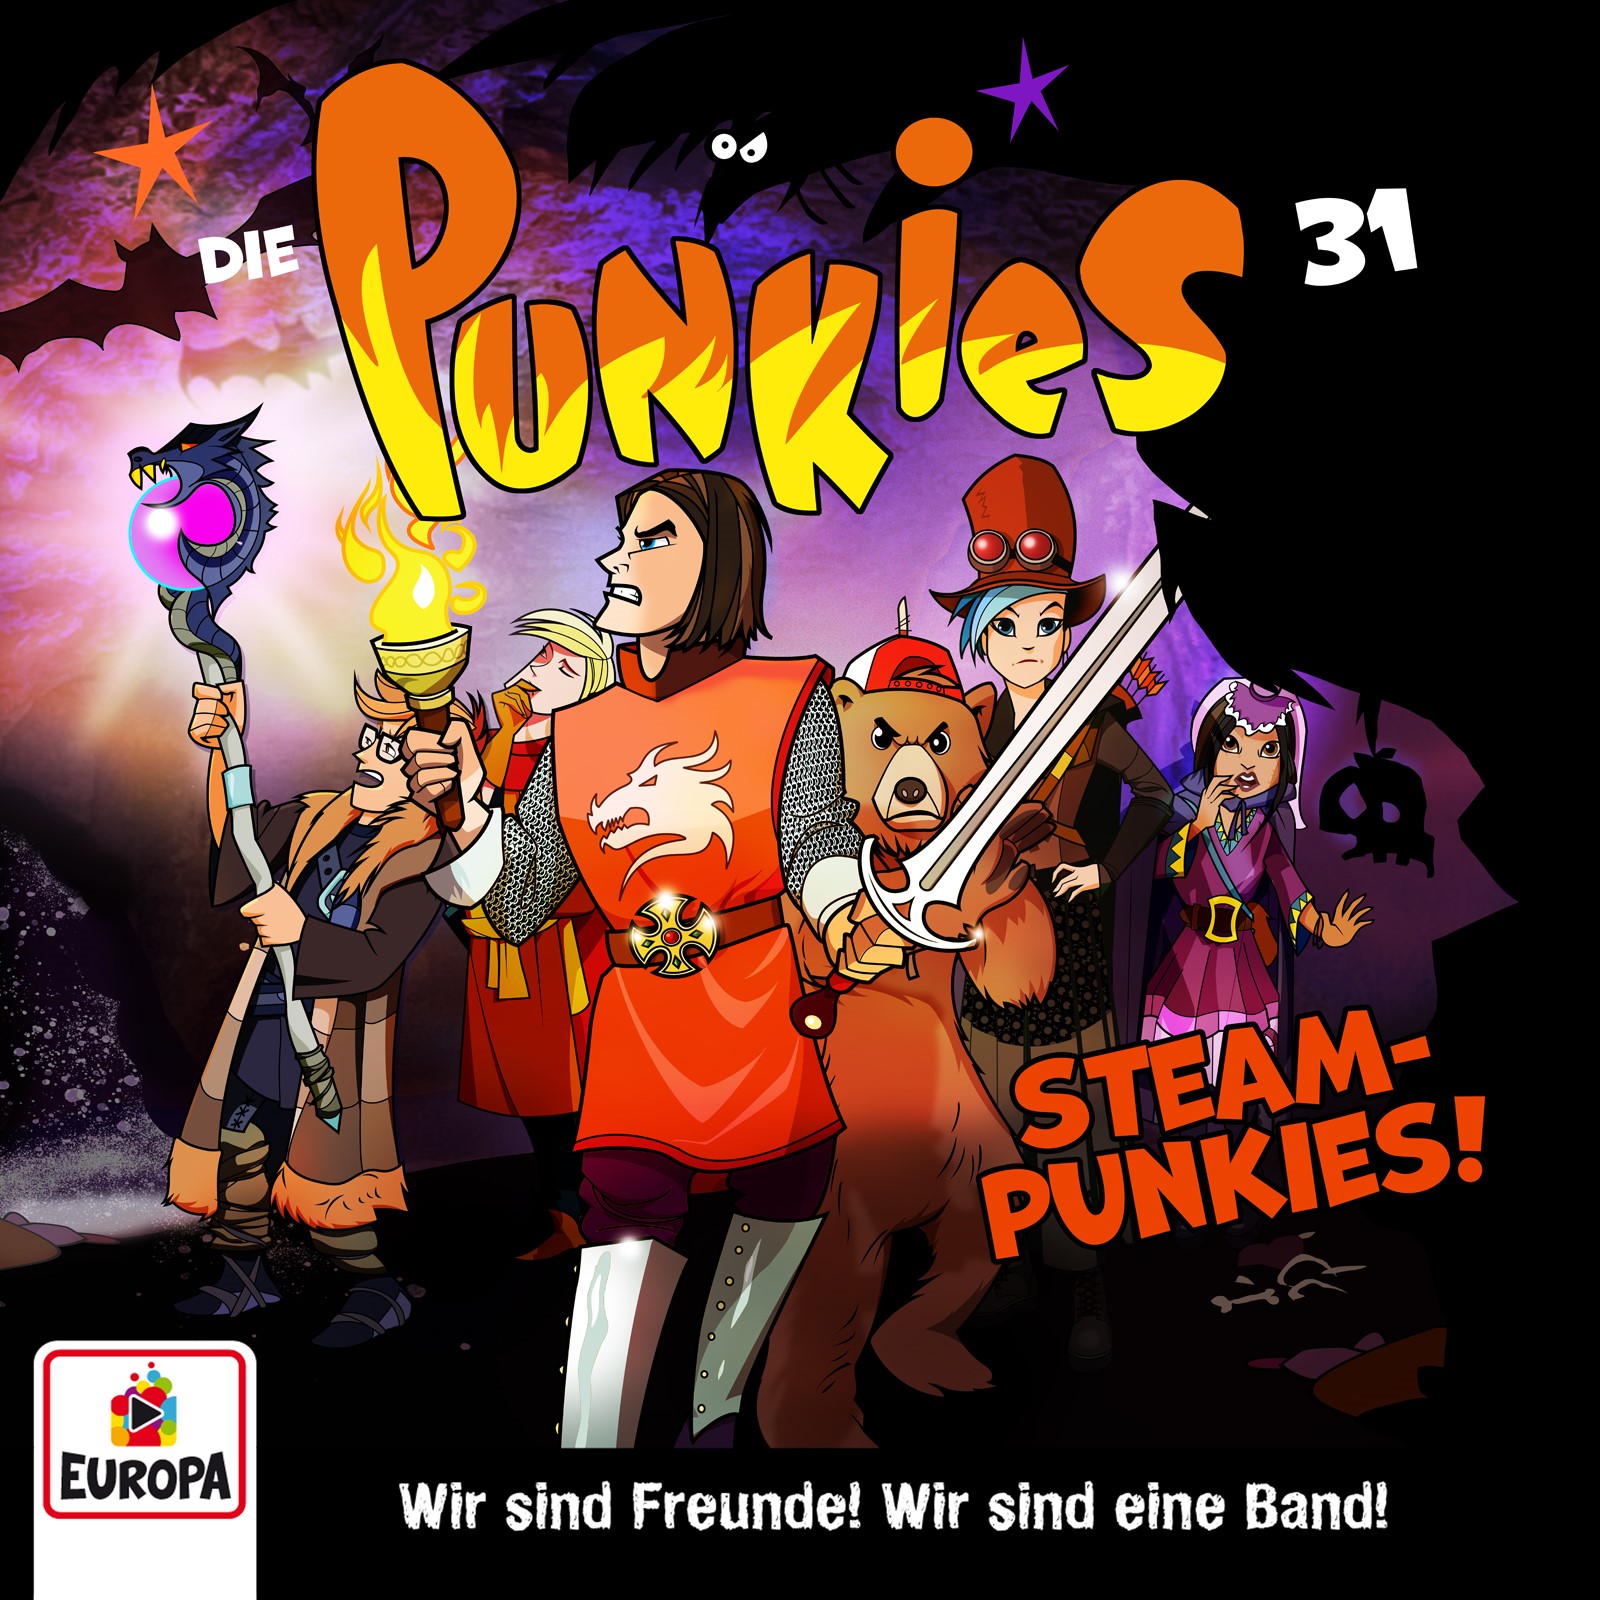 Die Punkies : Steam-Punkies!